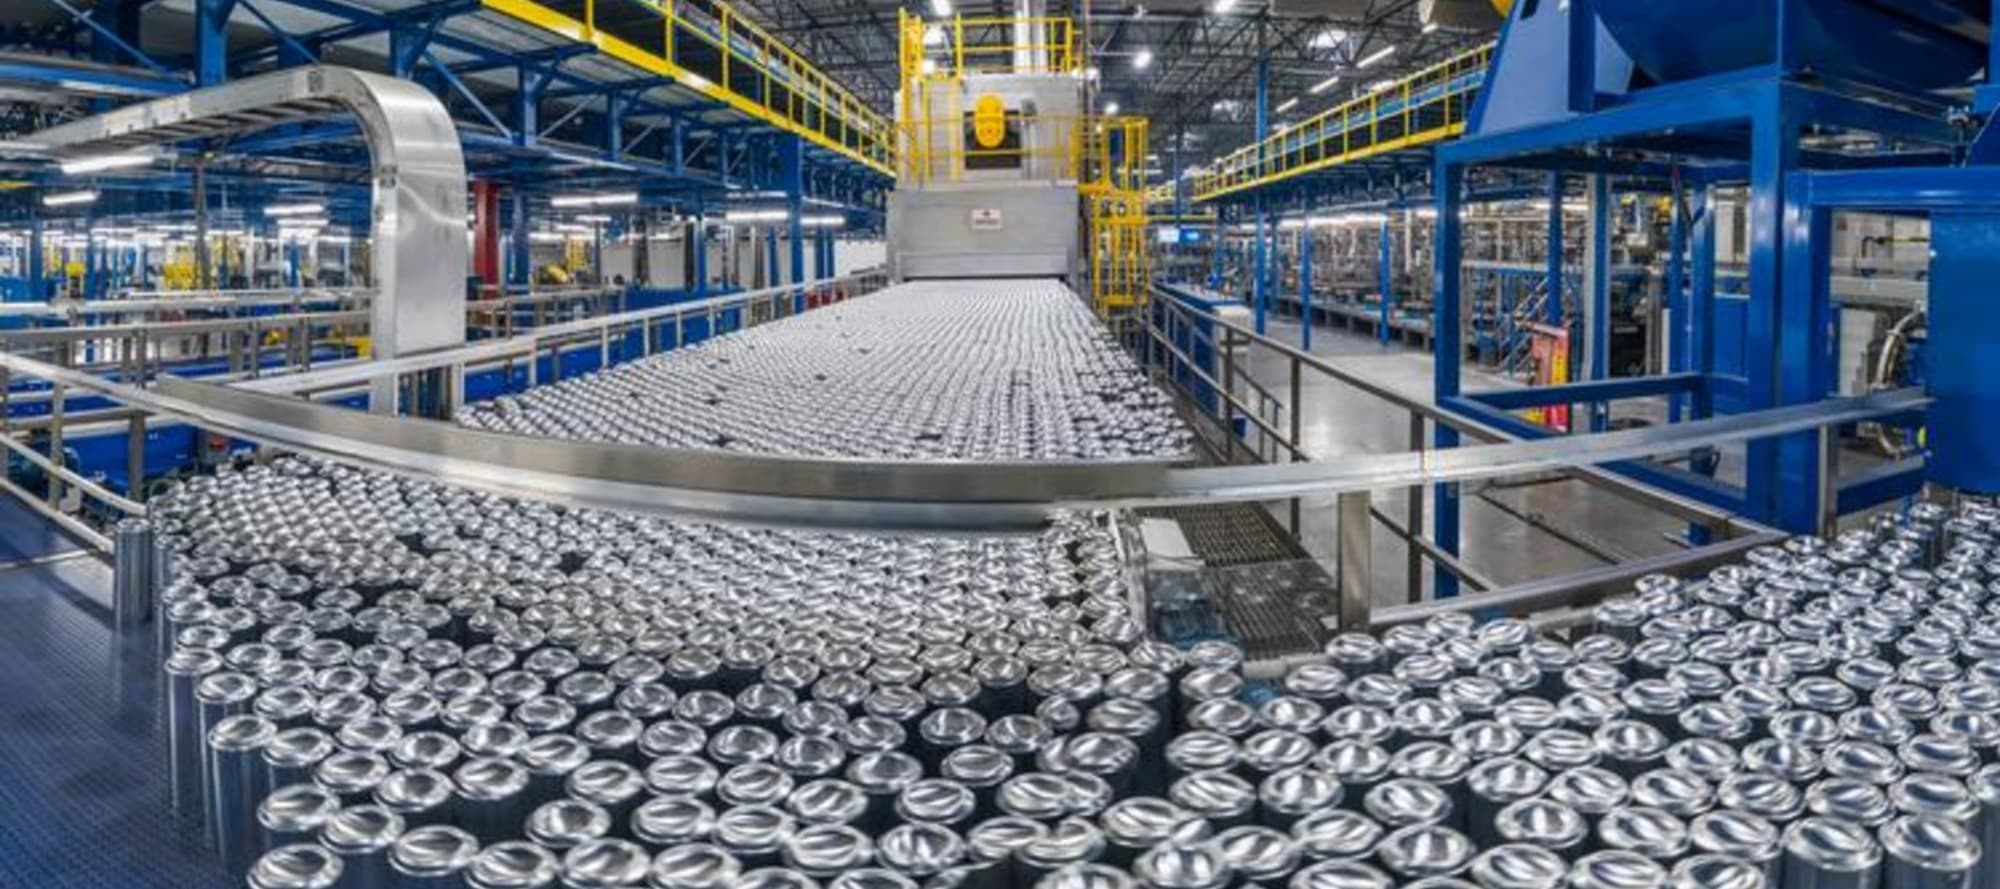 Фото новости: "Американский производитель алюминиевых банок Ball избавился от российских активов"